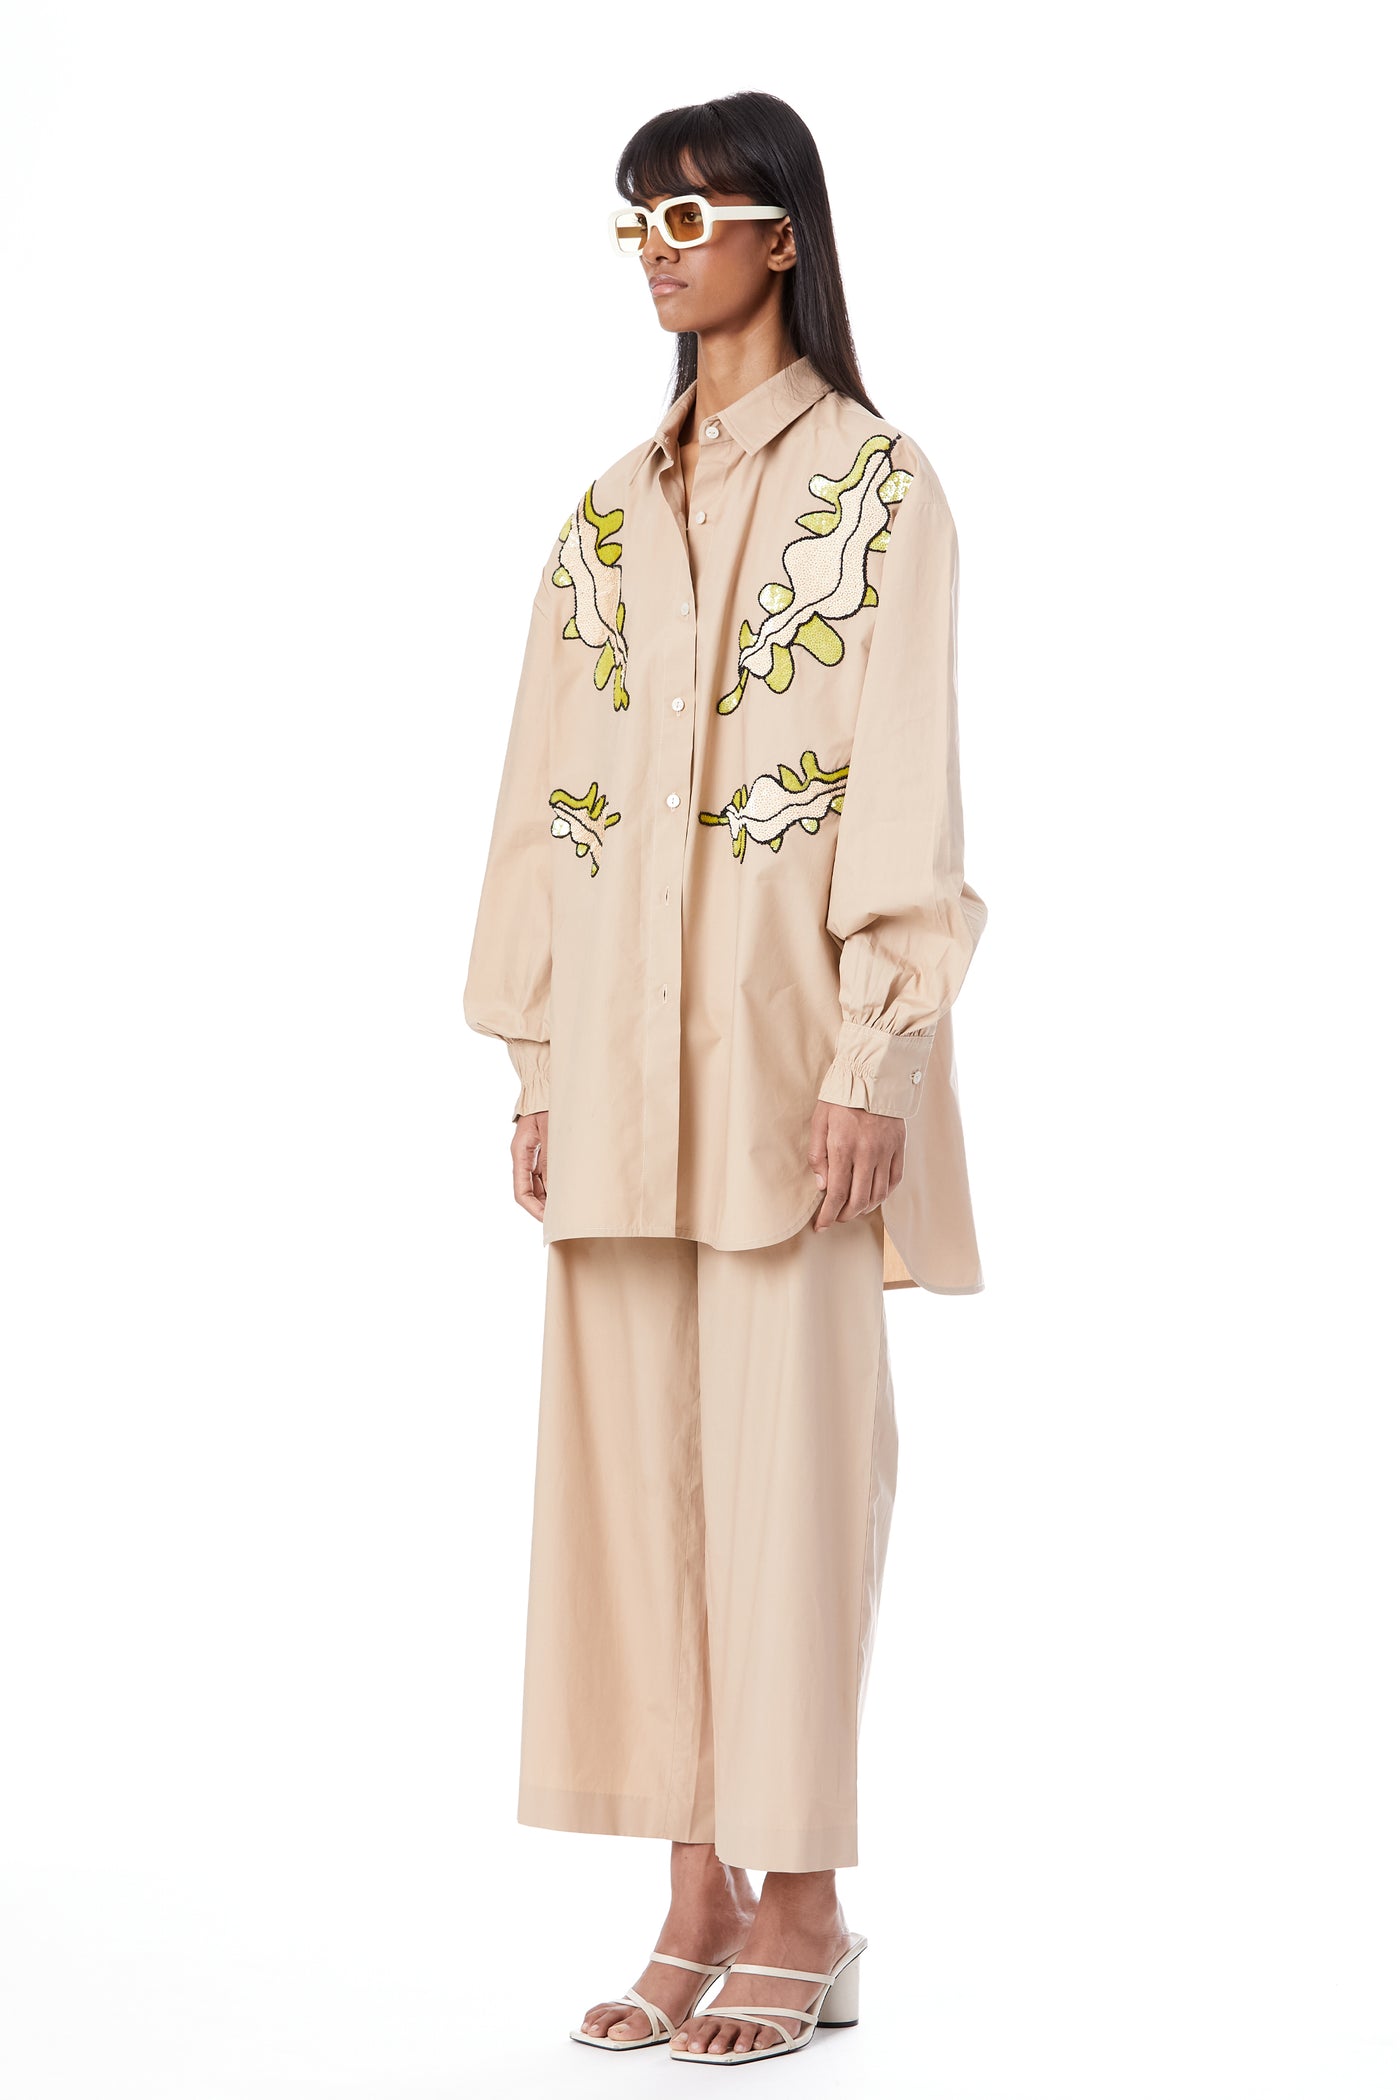 Kanika Goyal Label Willow Hand Embellished Shirt indian designer wear online shopping melange singapore